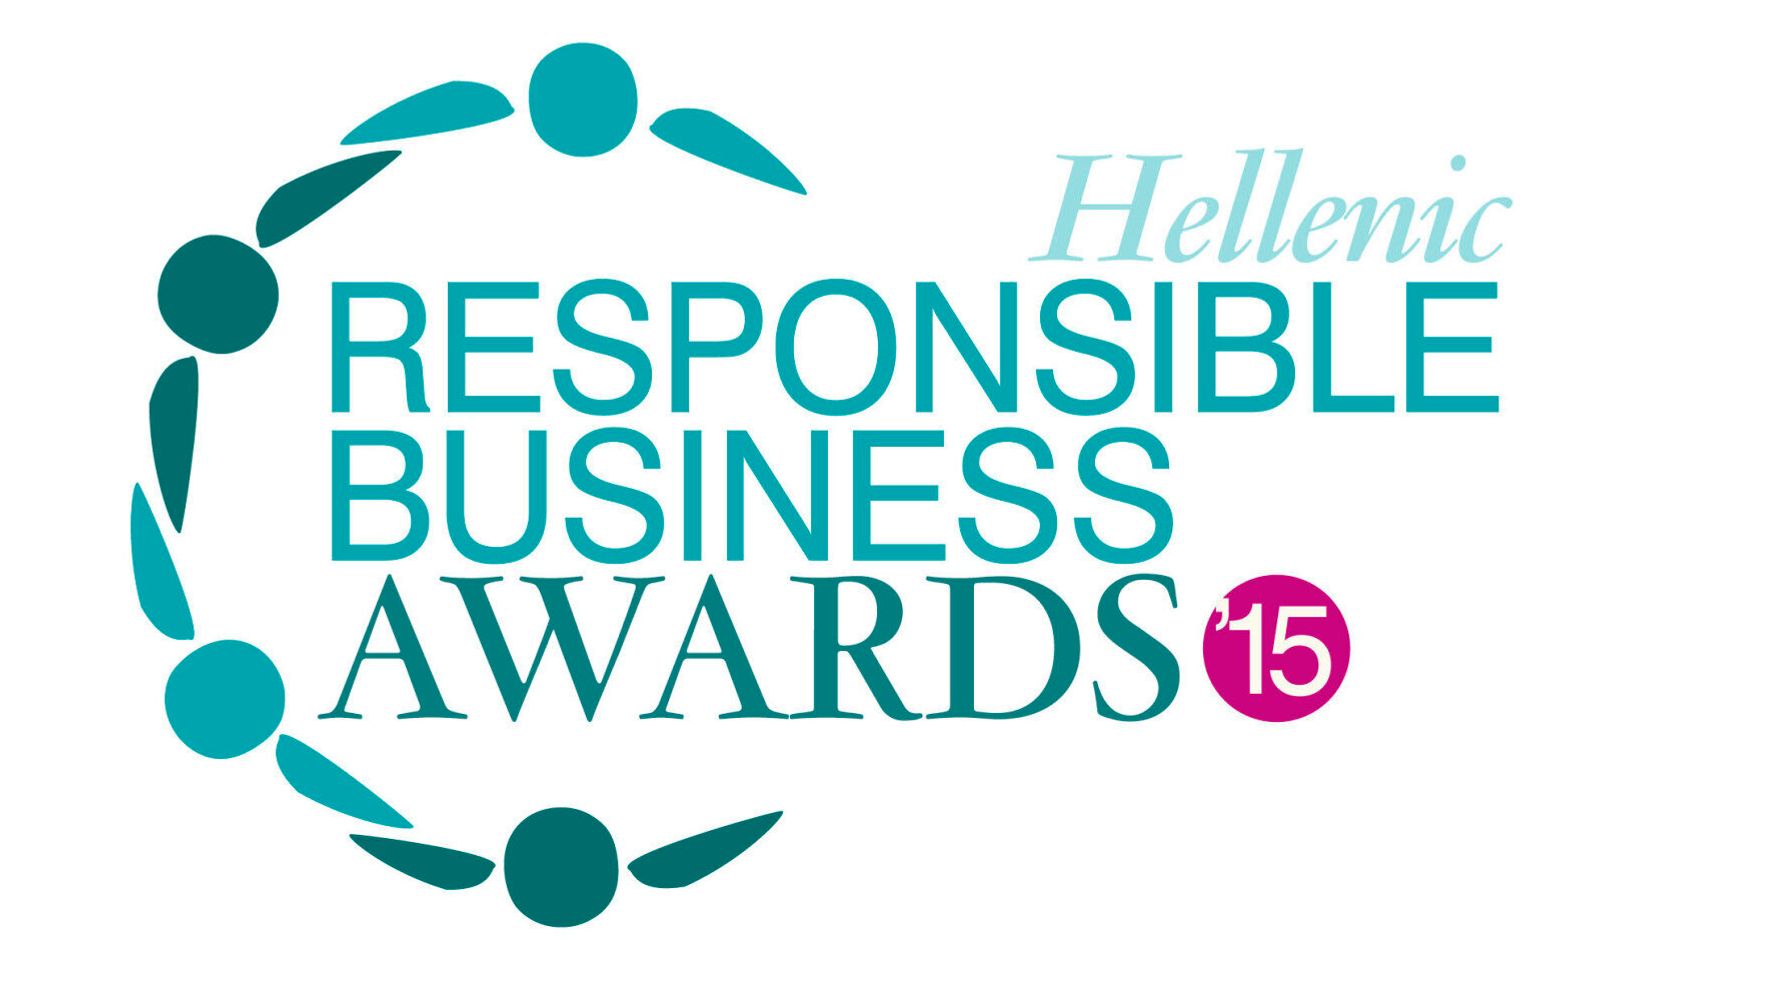 Responsible Business Awards Το έργο των Υπεύθυνων Επιχειρήσεων